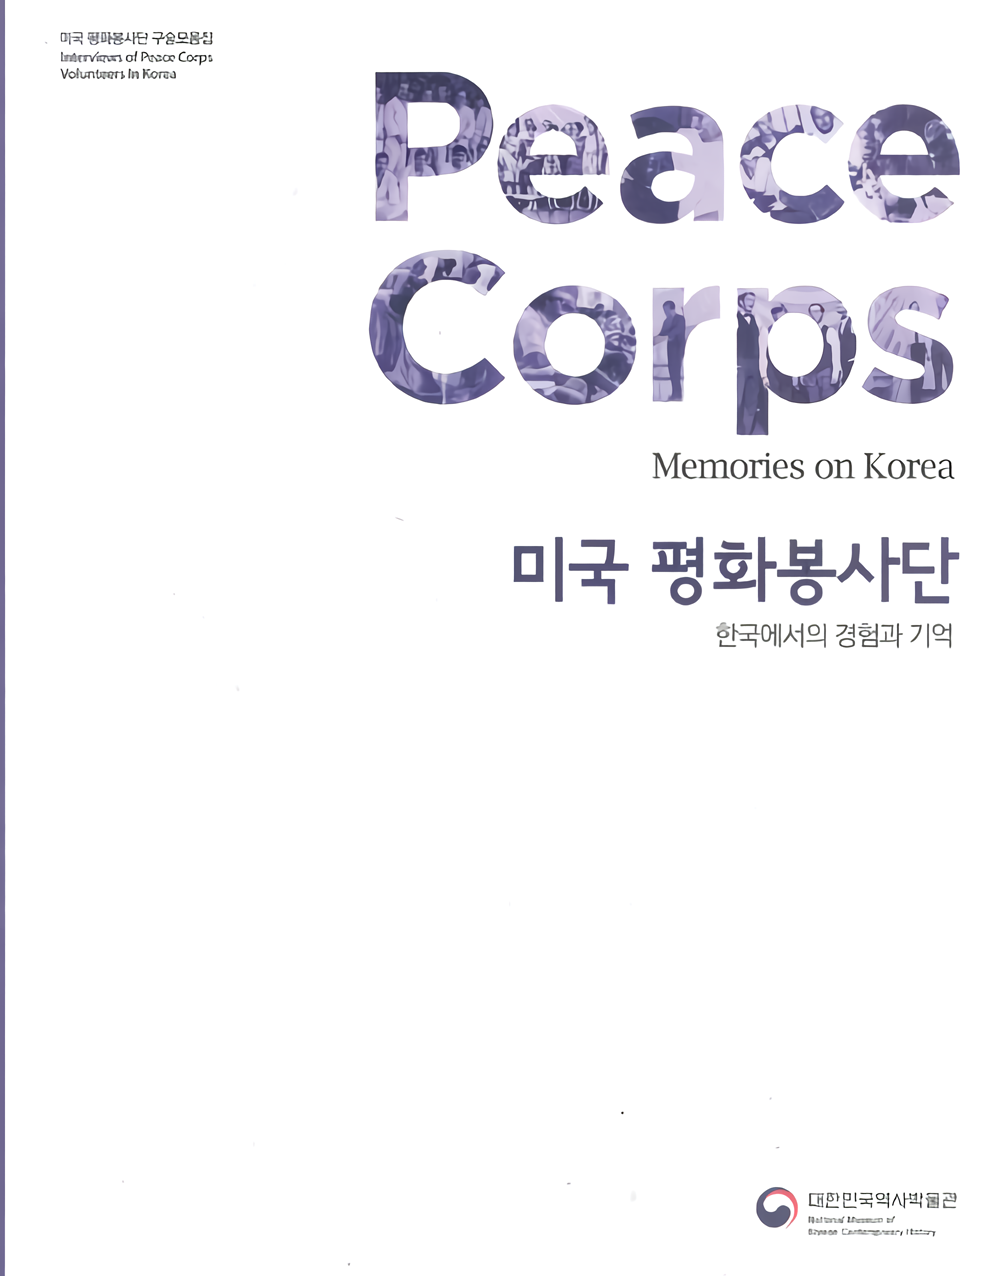 『미국 평화봉사단 구술자료집-한국에서의 경험과 기억』